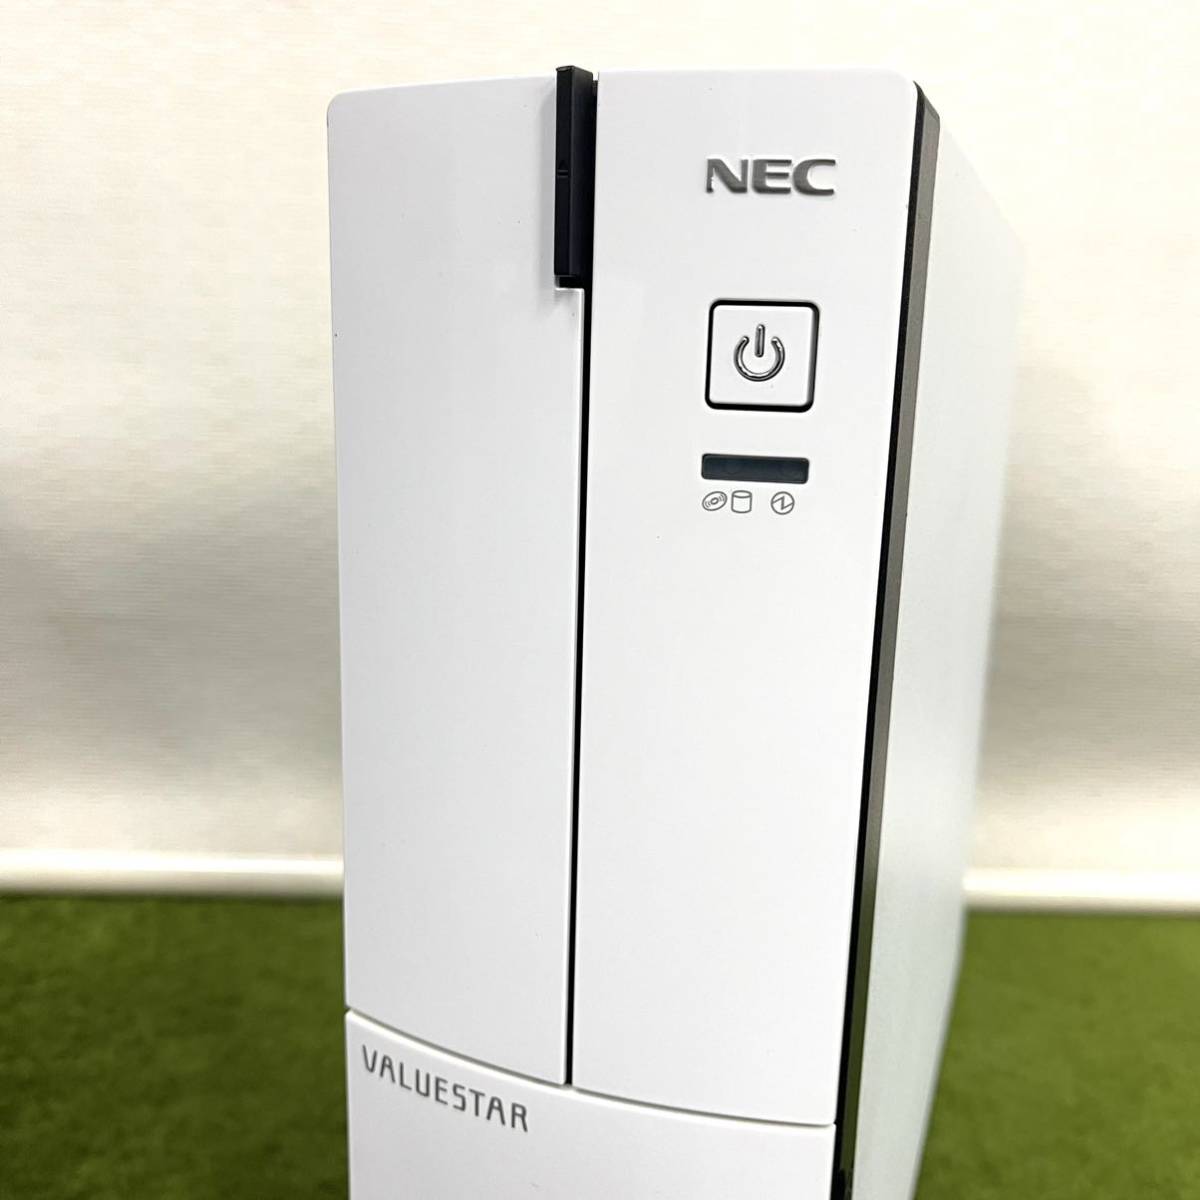 ★☆動作確認済/初期化済 NEC デスクトップ型パソコン PC-GD3682ZR2 VALUESTAR G Windows7 Core i7 4790 3.60GHz メモリ:4GB/HDD:1TB_画像2